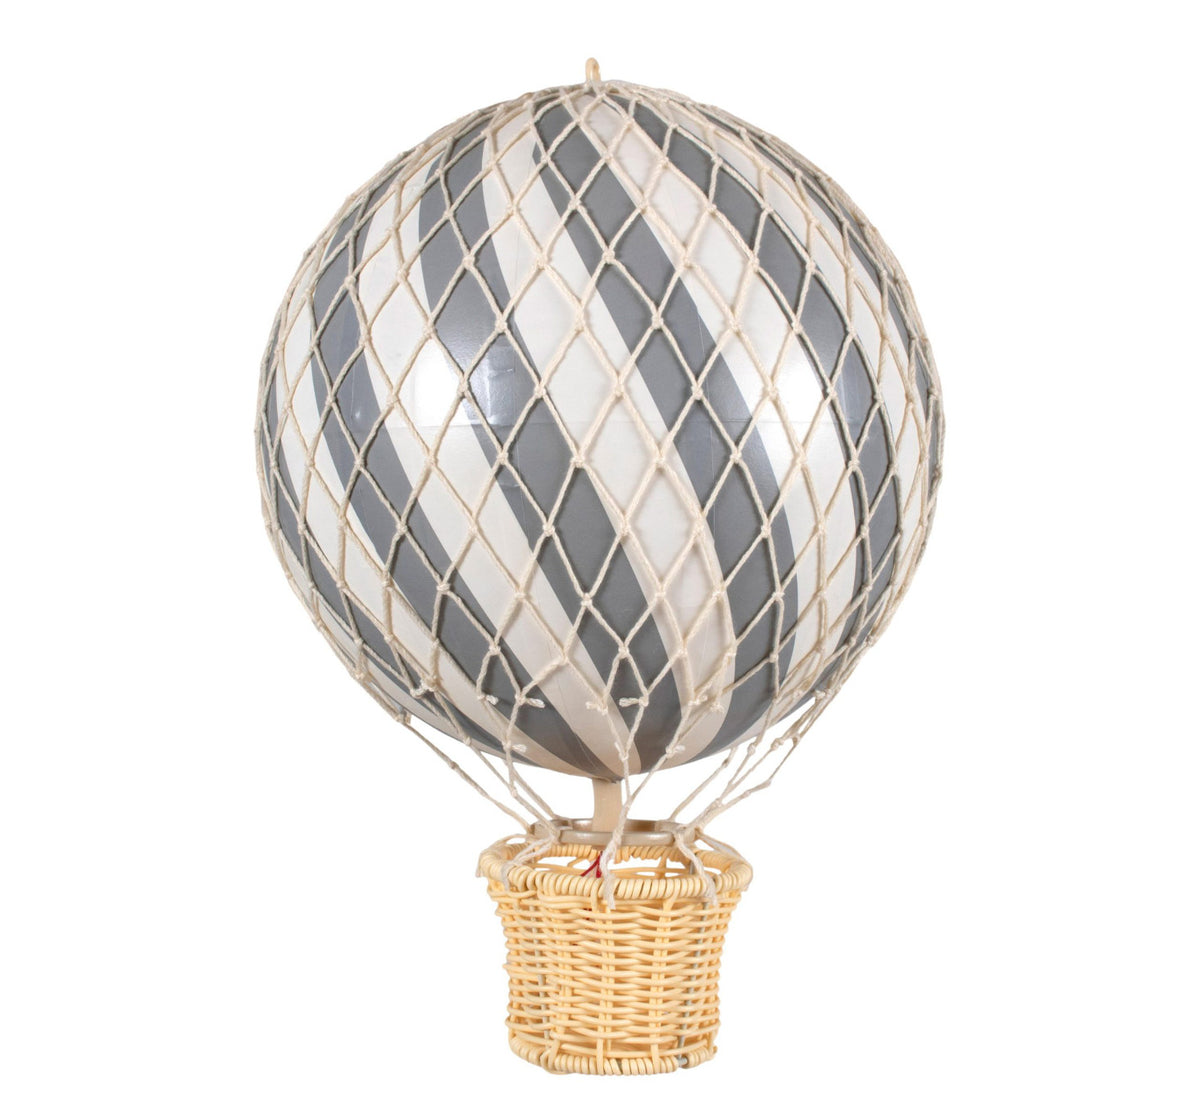 Handgefertigt aus recycelten Materialien ist Filibabba’s Heißluftballon “Grey” eine wundervolle Dekoration für jeden Ort, der etwas Zauber oder Abenteuer vertragen kann. Ausgestattet mit liebevollen Details und einer Öse oben am Ballon, lässt er sich super aufhängen und ist ein echter Hingucker.